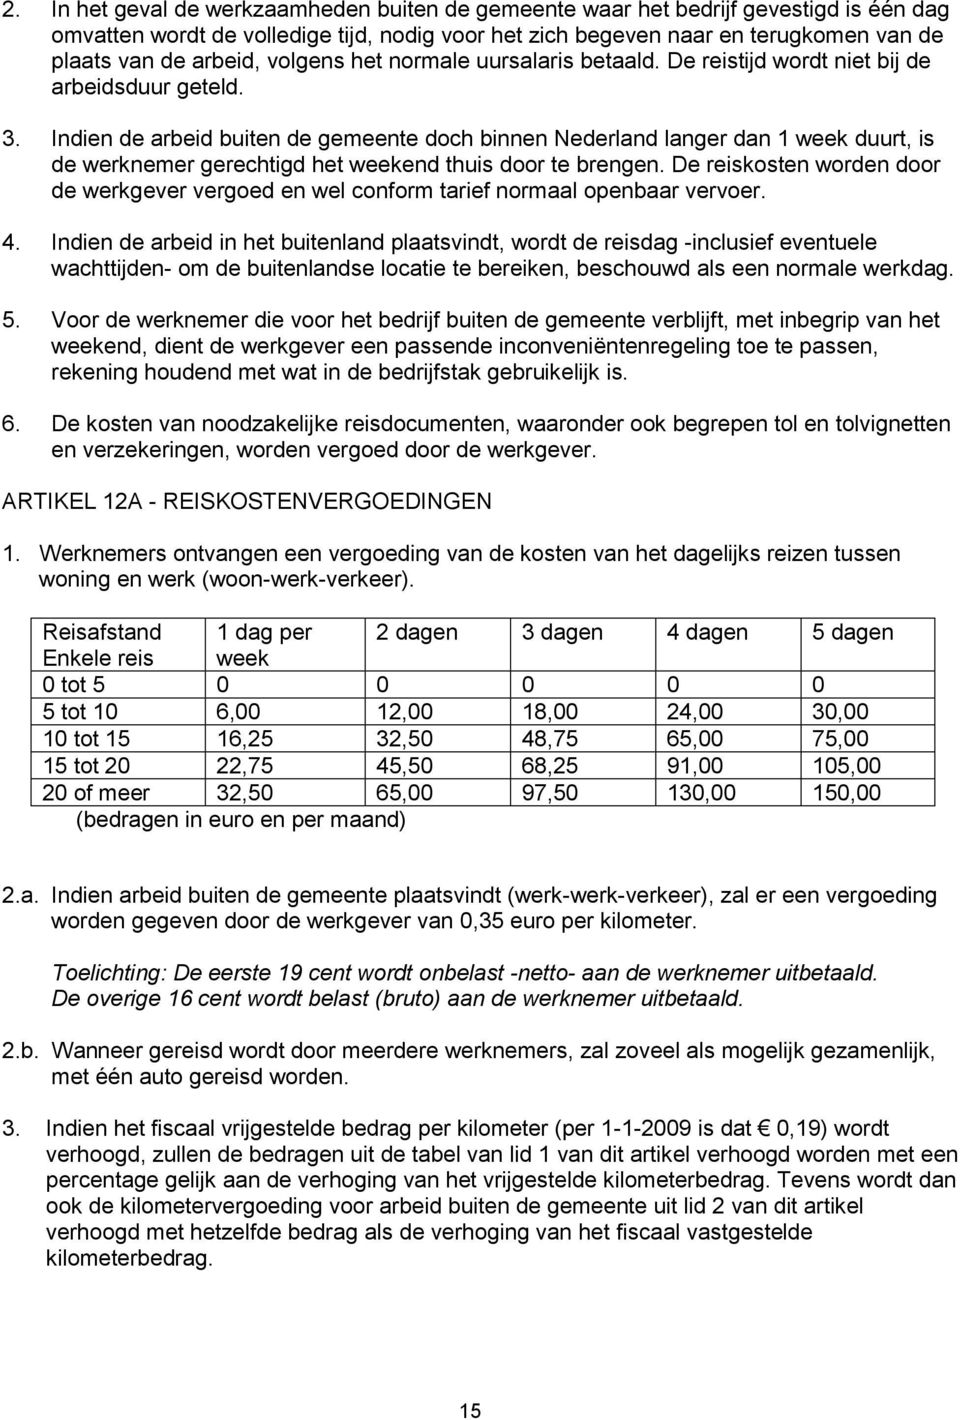 Indien de arbeid buiten de gemeente doch binnen Nederland langer dan 1 week duurt, is de werknemer gerechtigd het weekend thuis door te brengen.